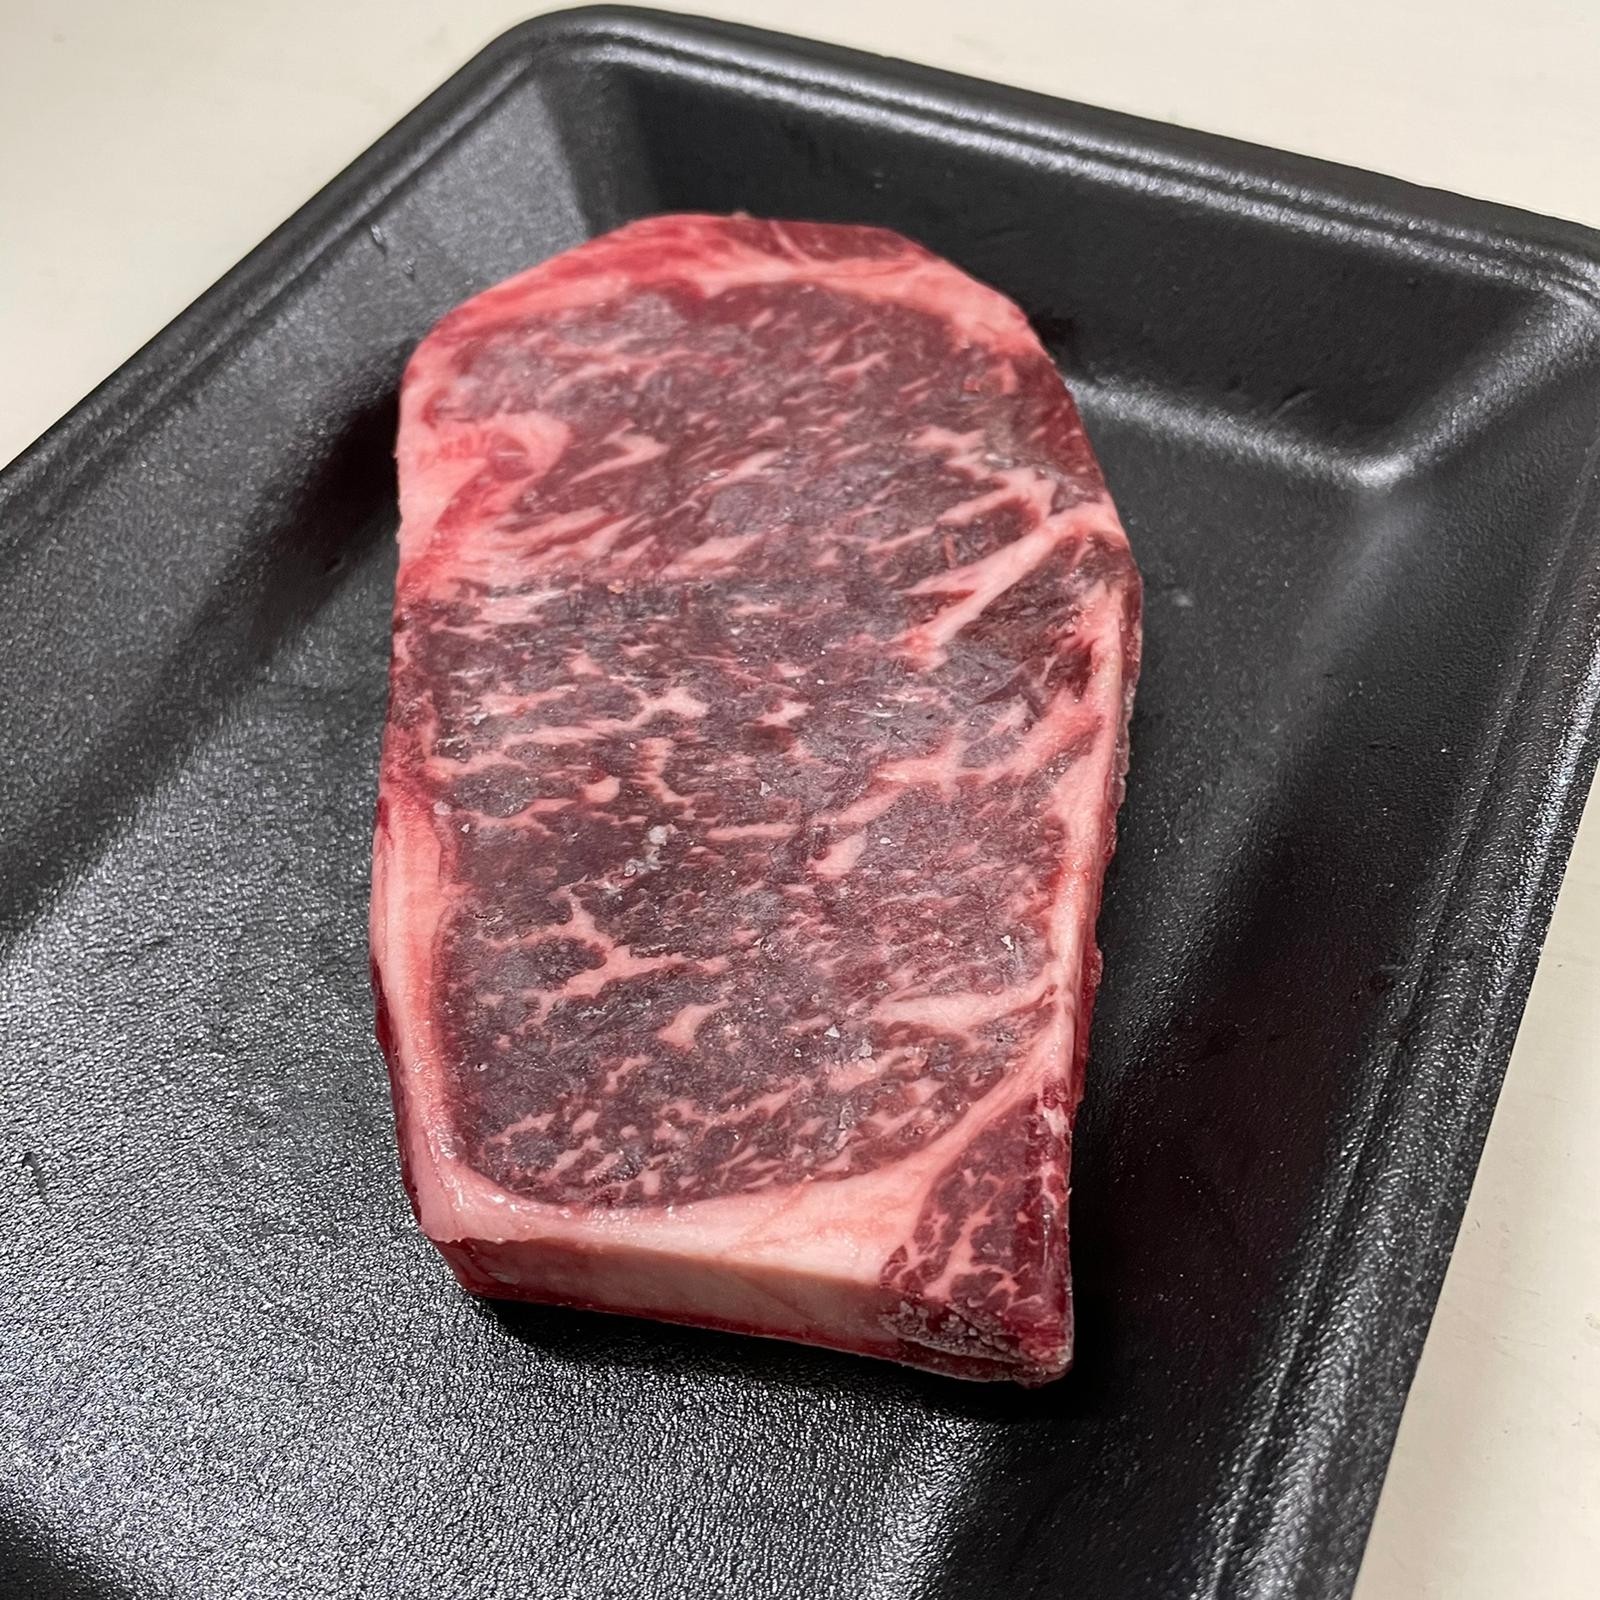 -NEW- Frozen AU M8/M9 Wagyu Striploin Steak 250g